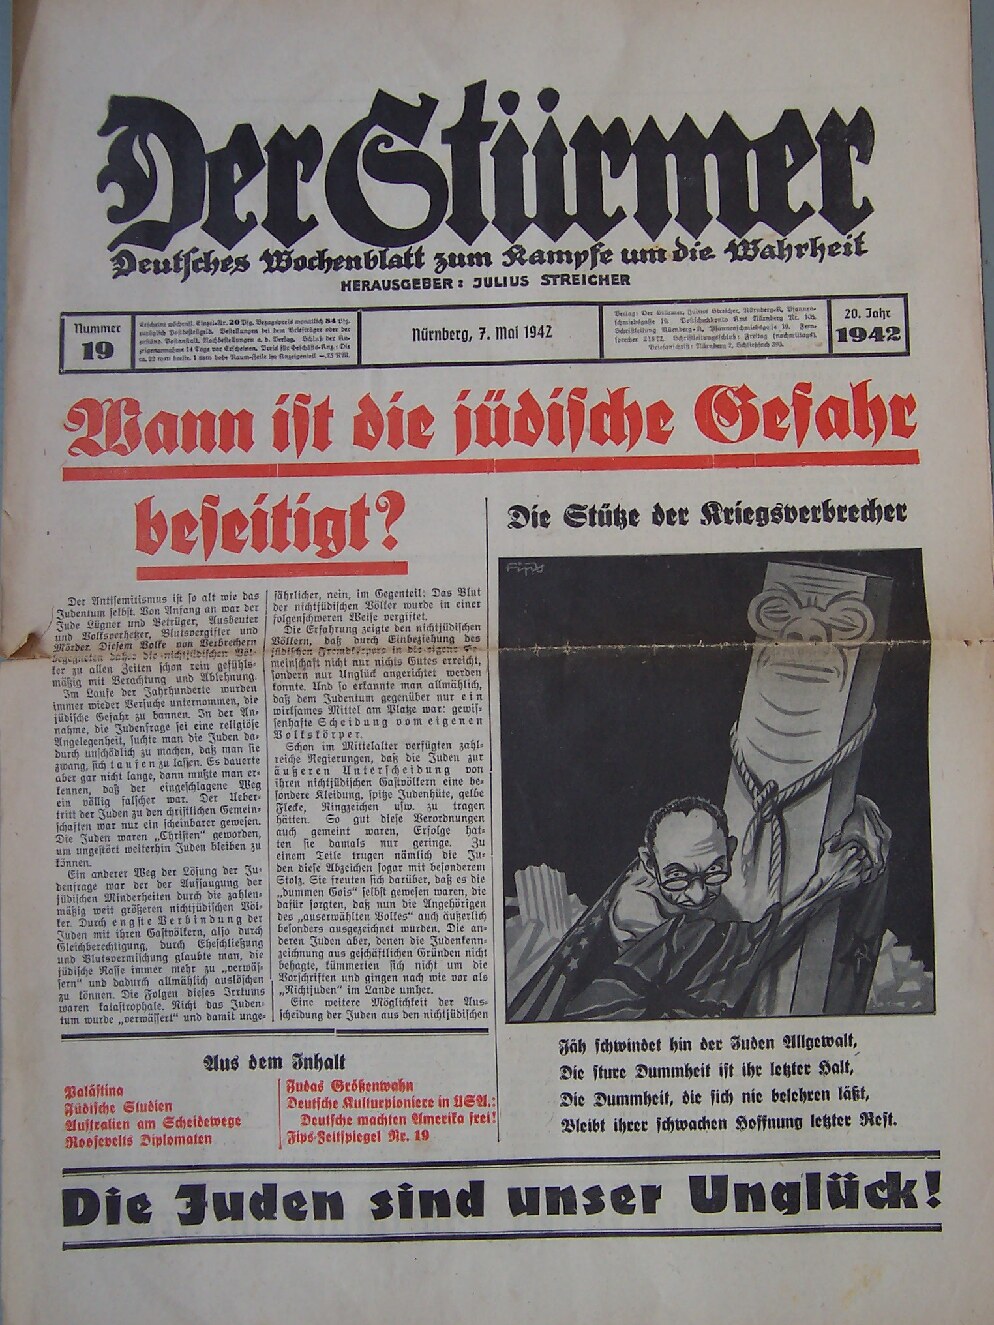 Der Stürmer - 1942 Nr. 19 - Wann ist die jüdische Gefahr beseitigt